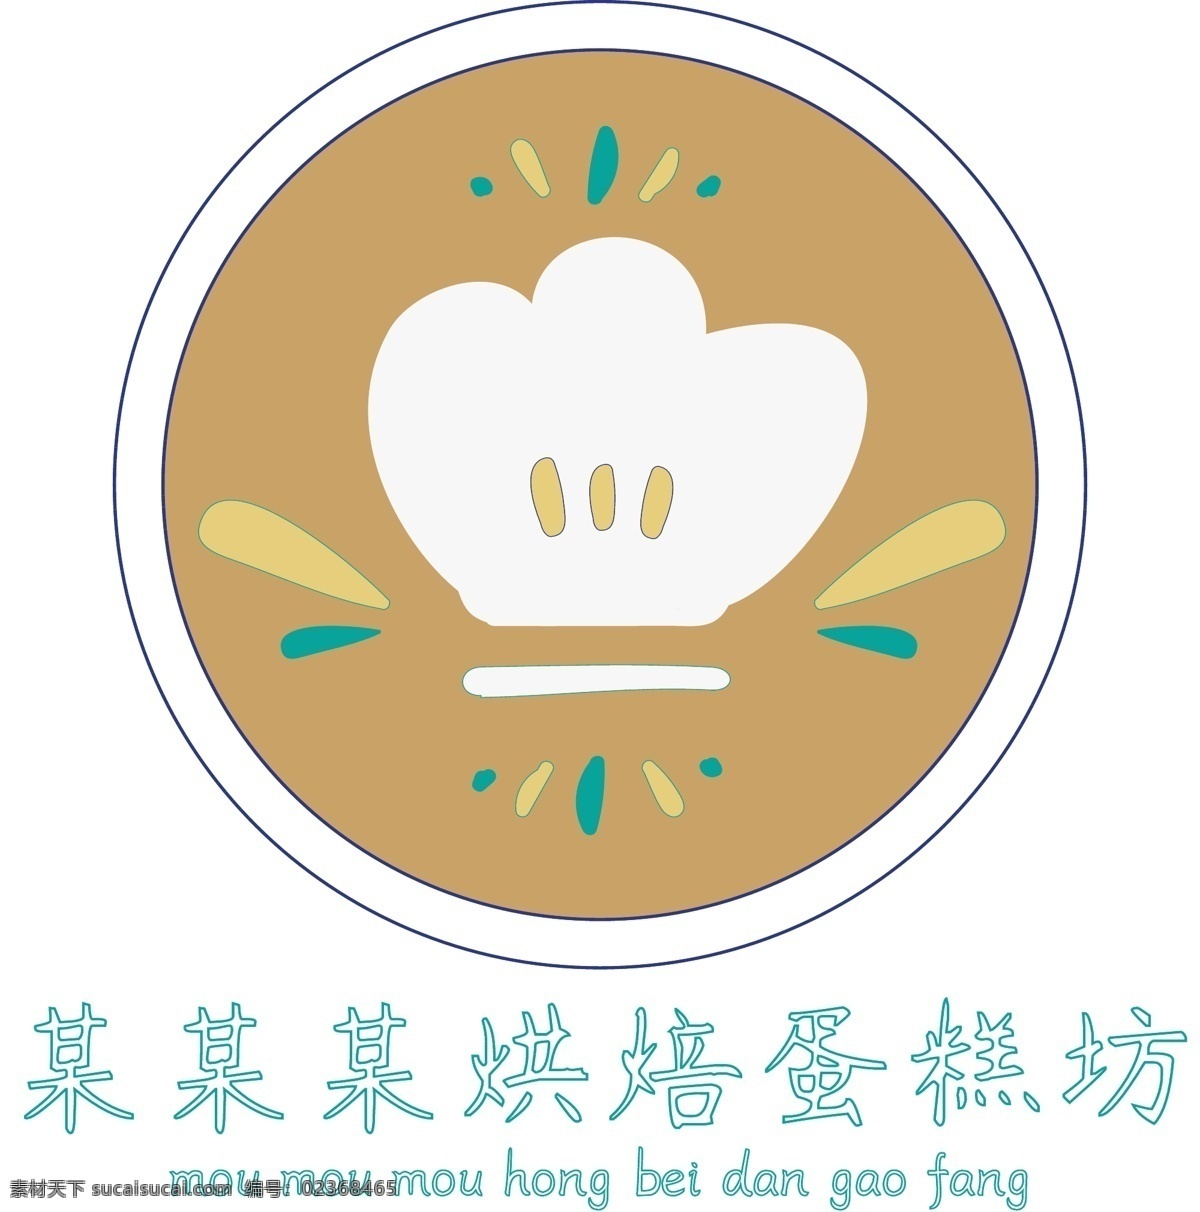 原创 可爱 烘焙 蛋糕 坊 logo 原创logo 可爱logo 蛋糕logo 烘焙logo 褐色 loggo 帽子logo 帽子素材 圆形logo